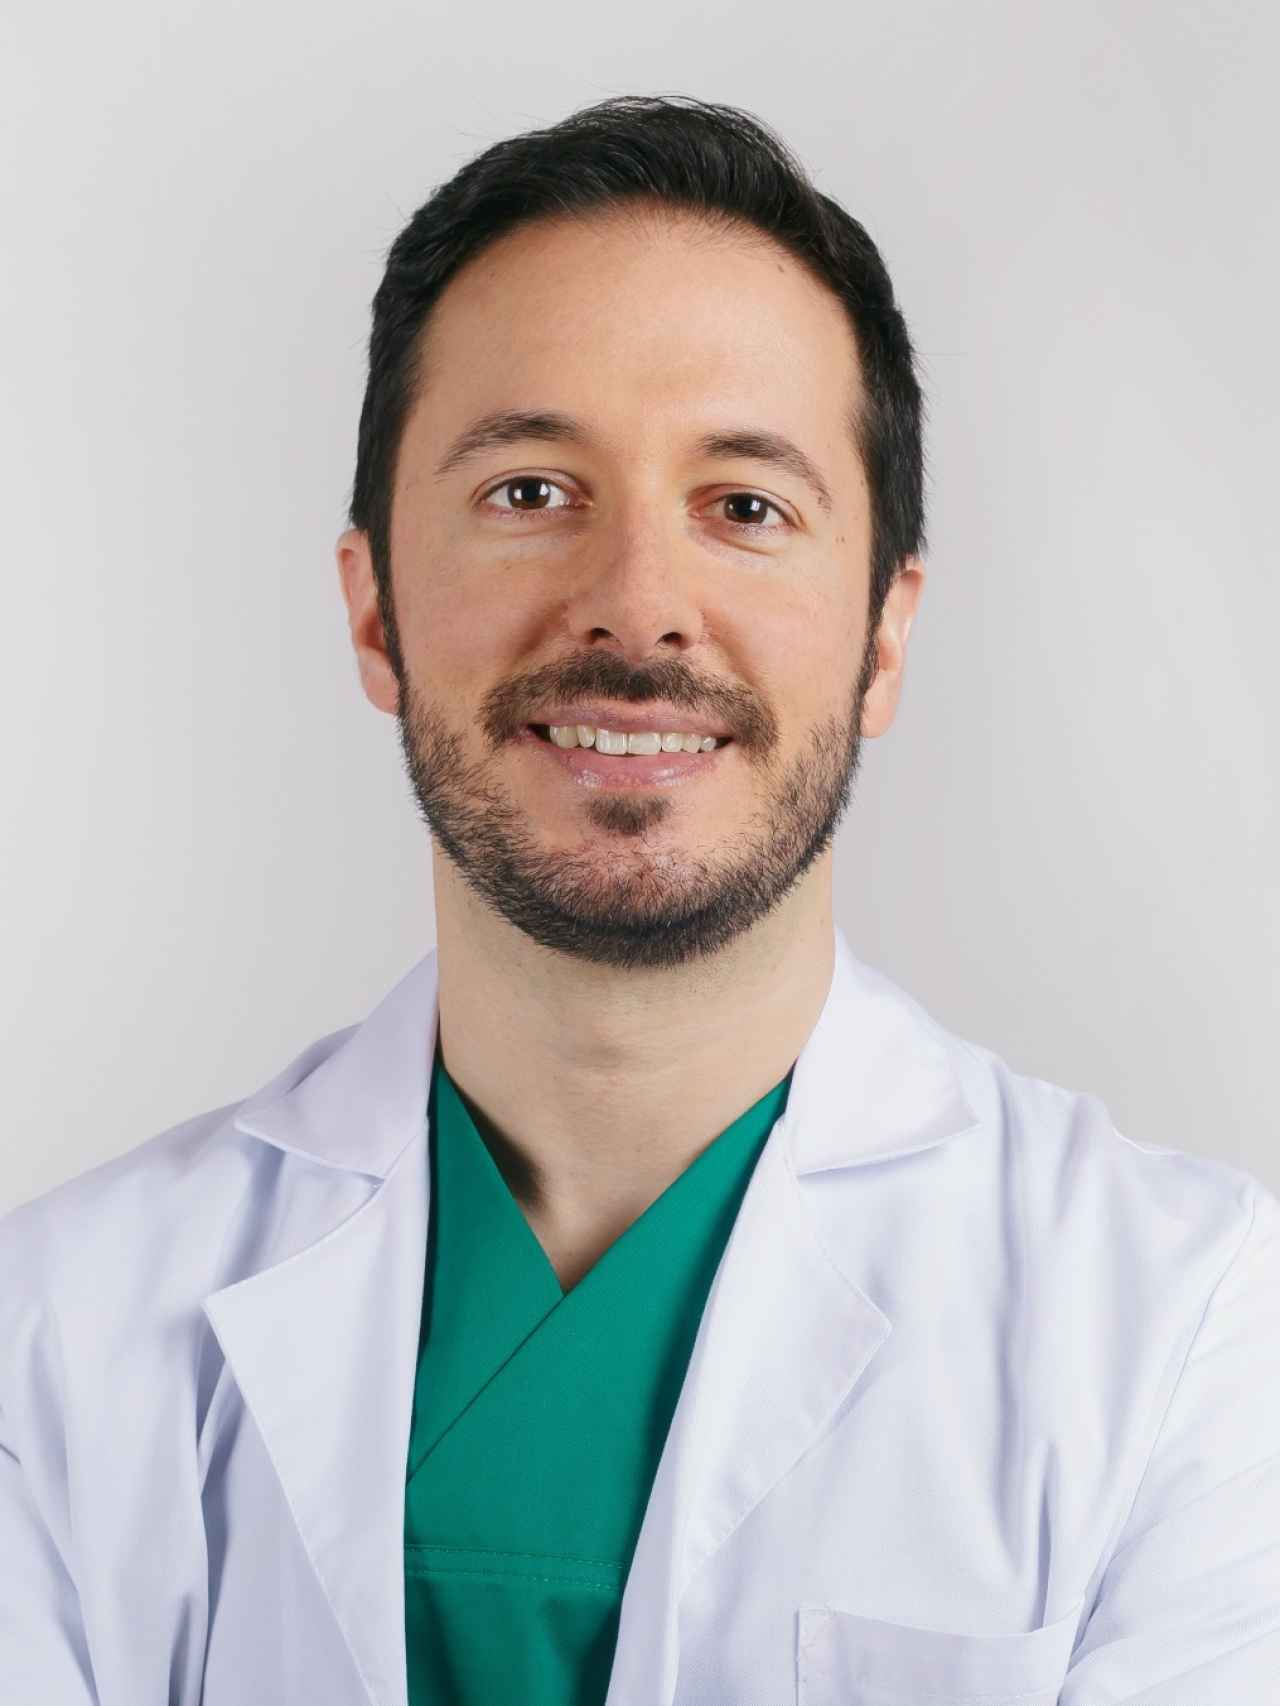 Luis Aguilar, uno de los médicos entrevistados.